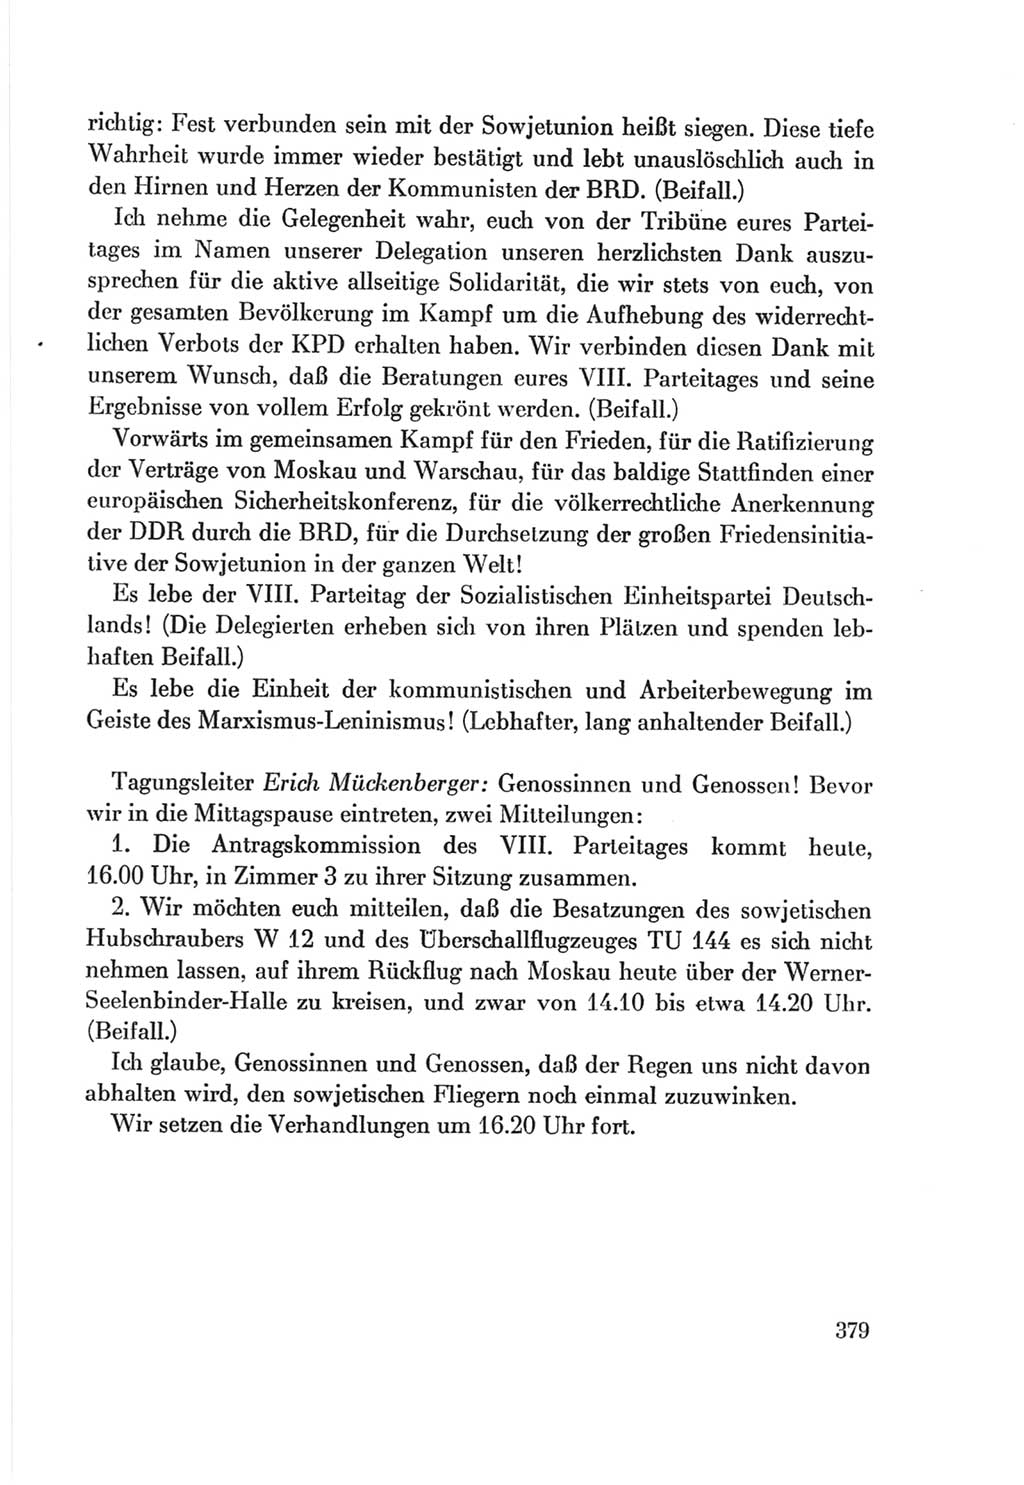 Protokoll der Verhandlungen des Ⅷ. Parteitages der Sozialistischen Einheitspartei Deutschlands (SED) [Deutsche Demokratische Republik (DDR)] 1971, Band 1, Seite 379 (Prot. Verh. Ⅷ. PT SED DDR 1971, Bd. 1, S. 379)